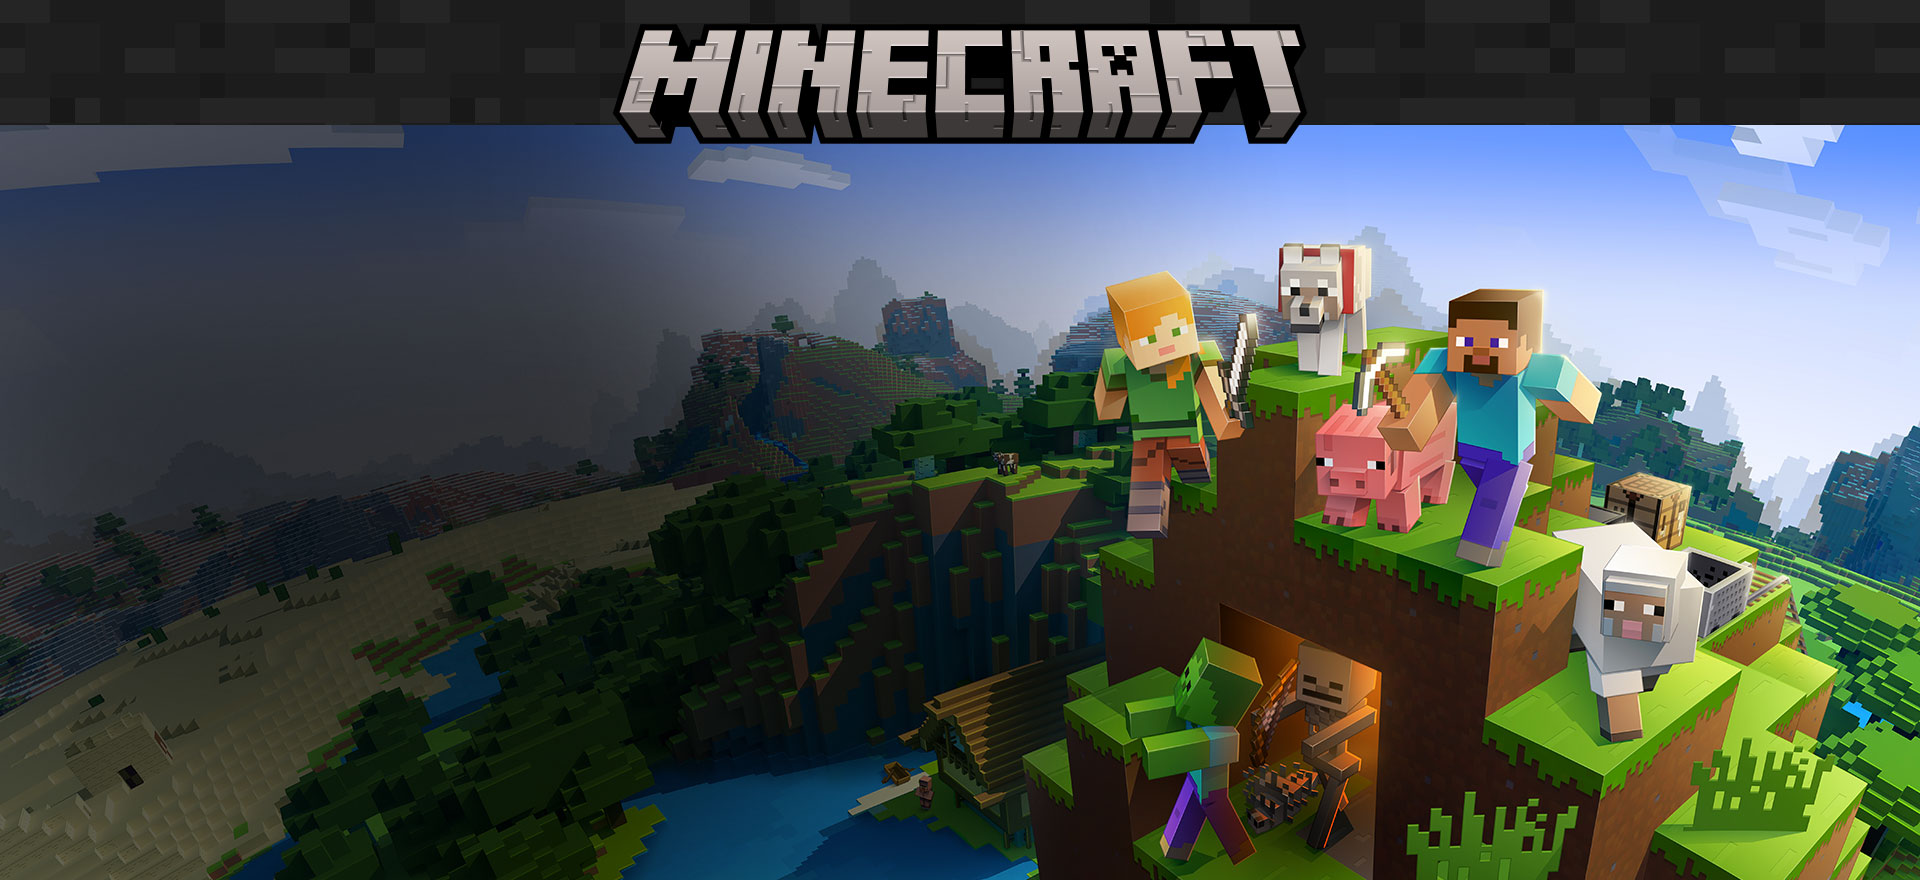 블록 환경 배경에서 게임 캐릭터와 함께 표현된 Minecraft 로고